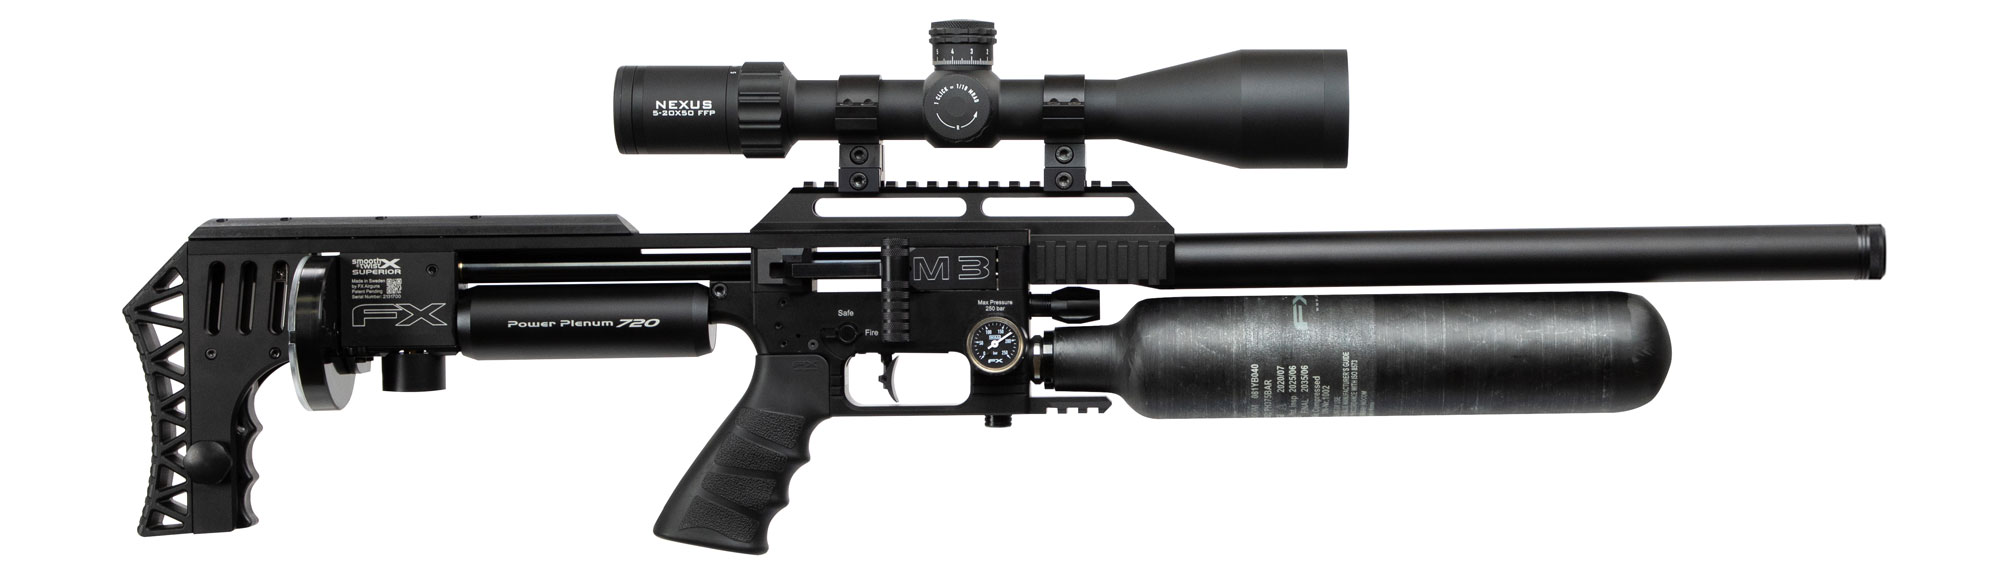 Impact M3 Sniper